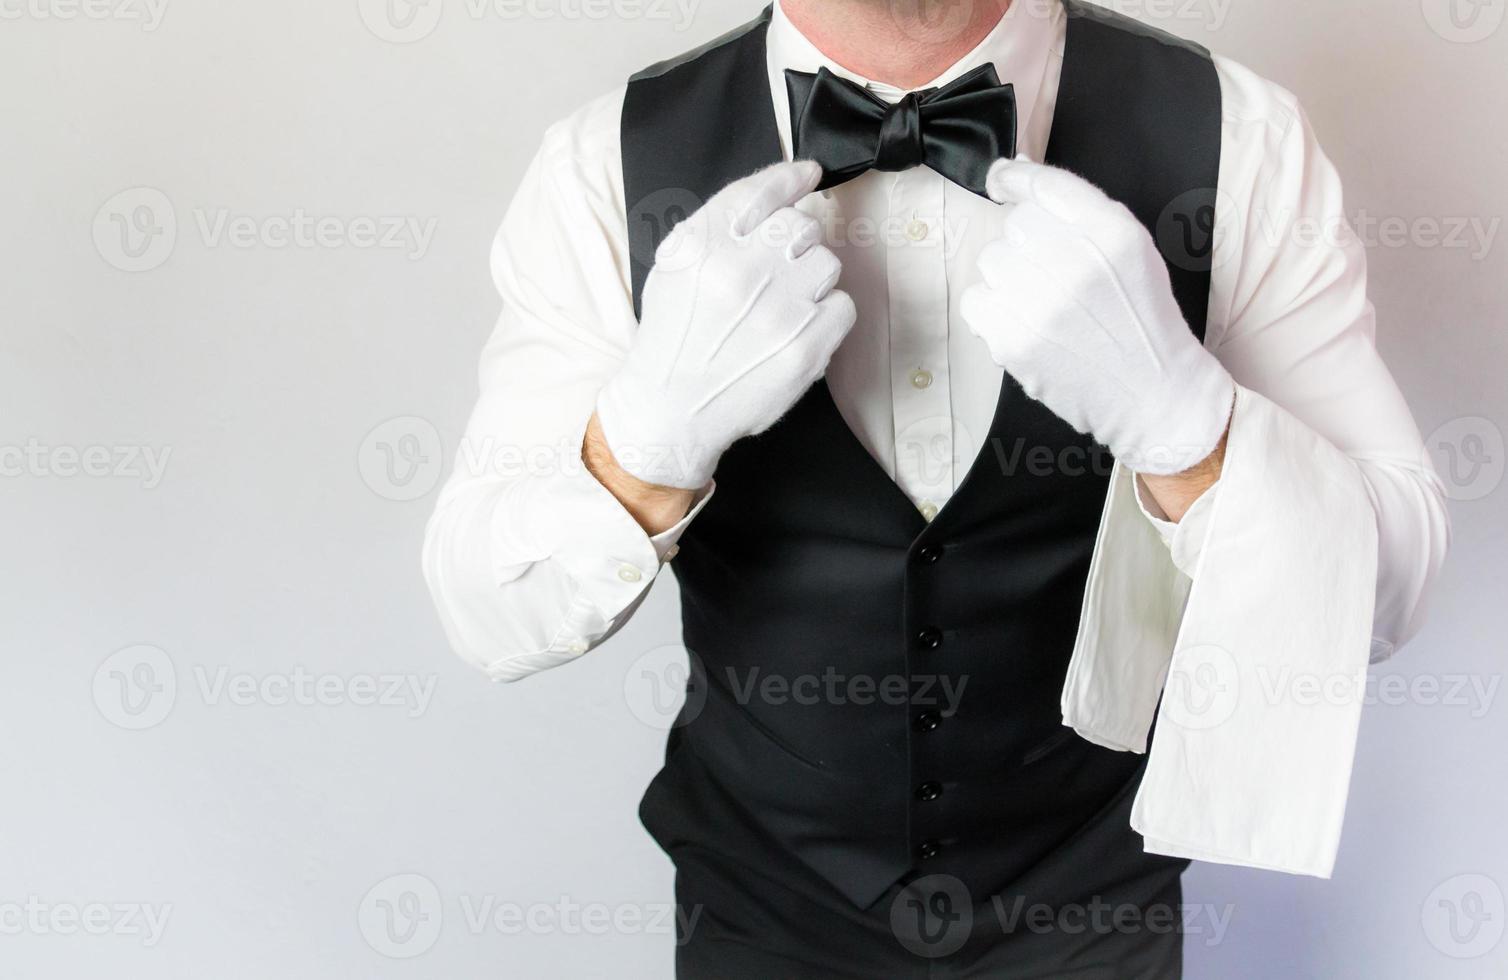 retrato de camarero o mayordomo con guantes blancos alisando la corbata de moño sobre fondo blanco. concepto de industria de servicios y cortesía profesional. foto